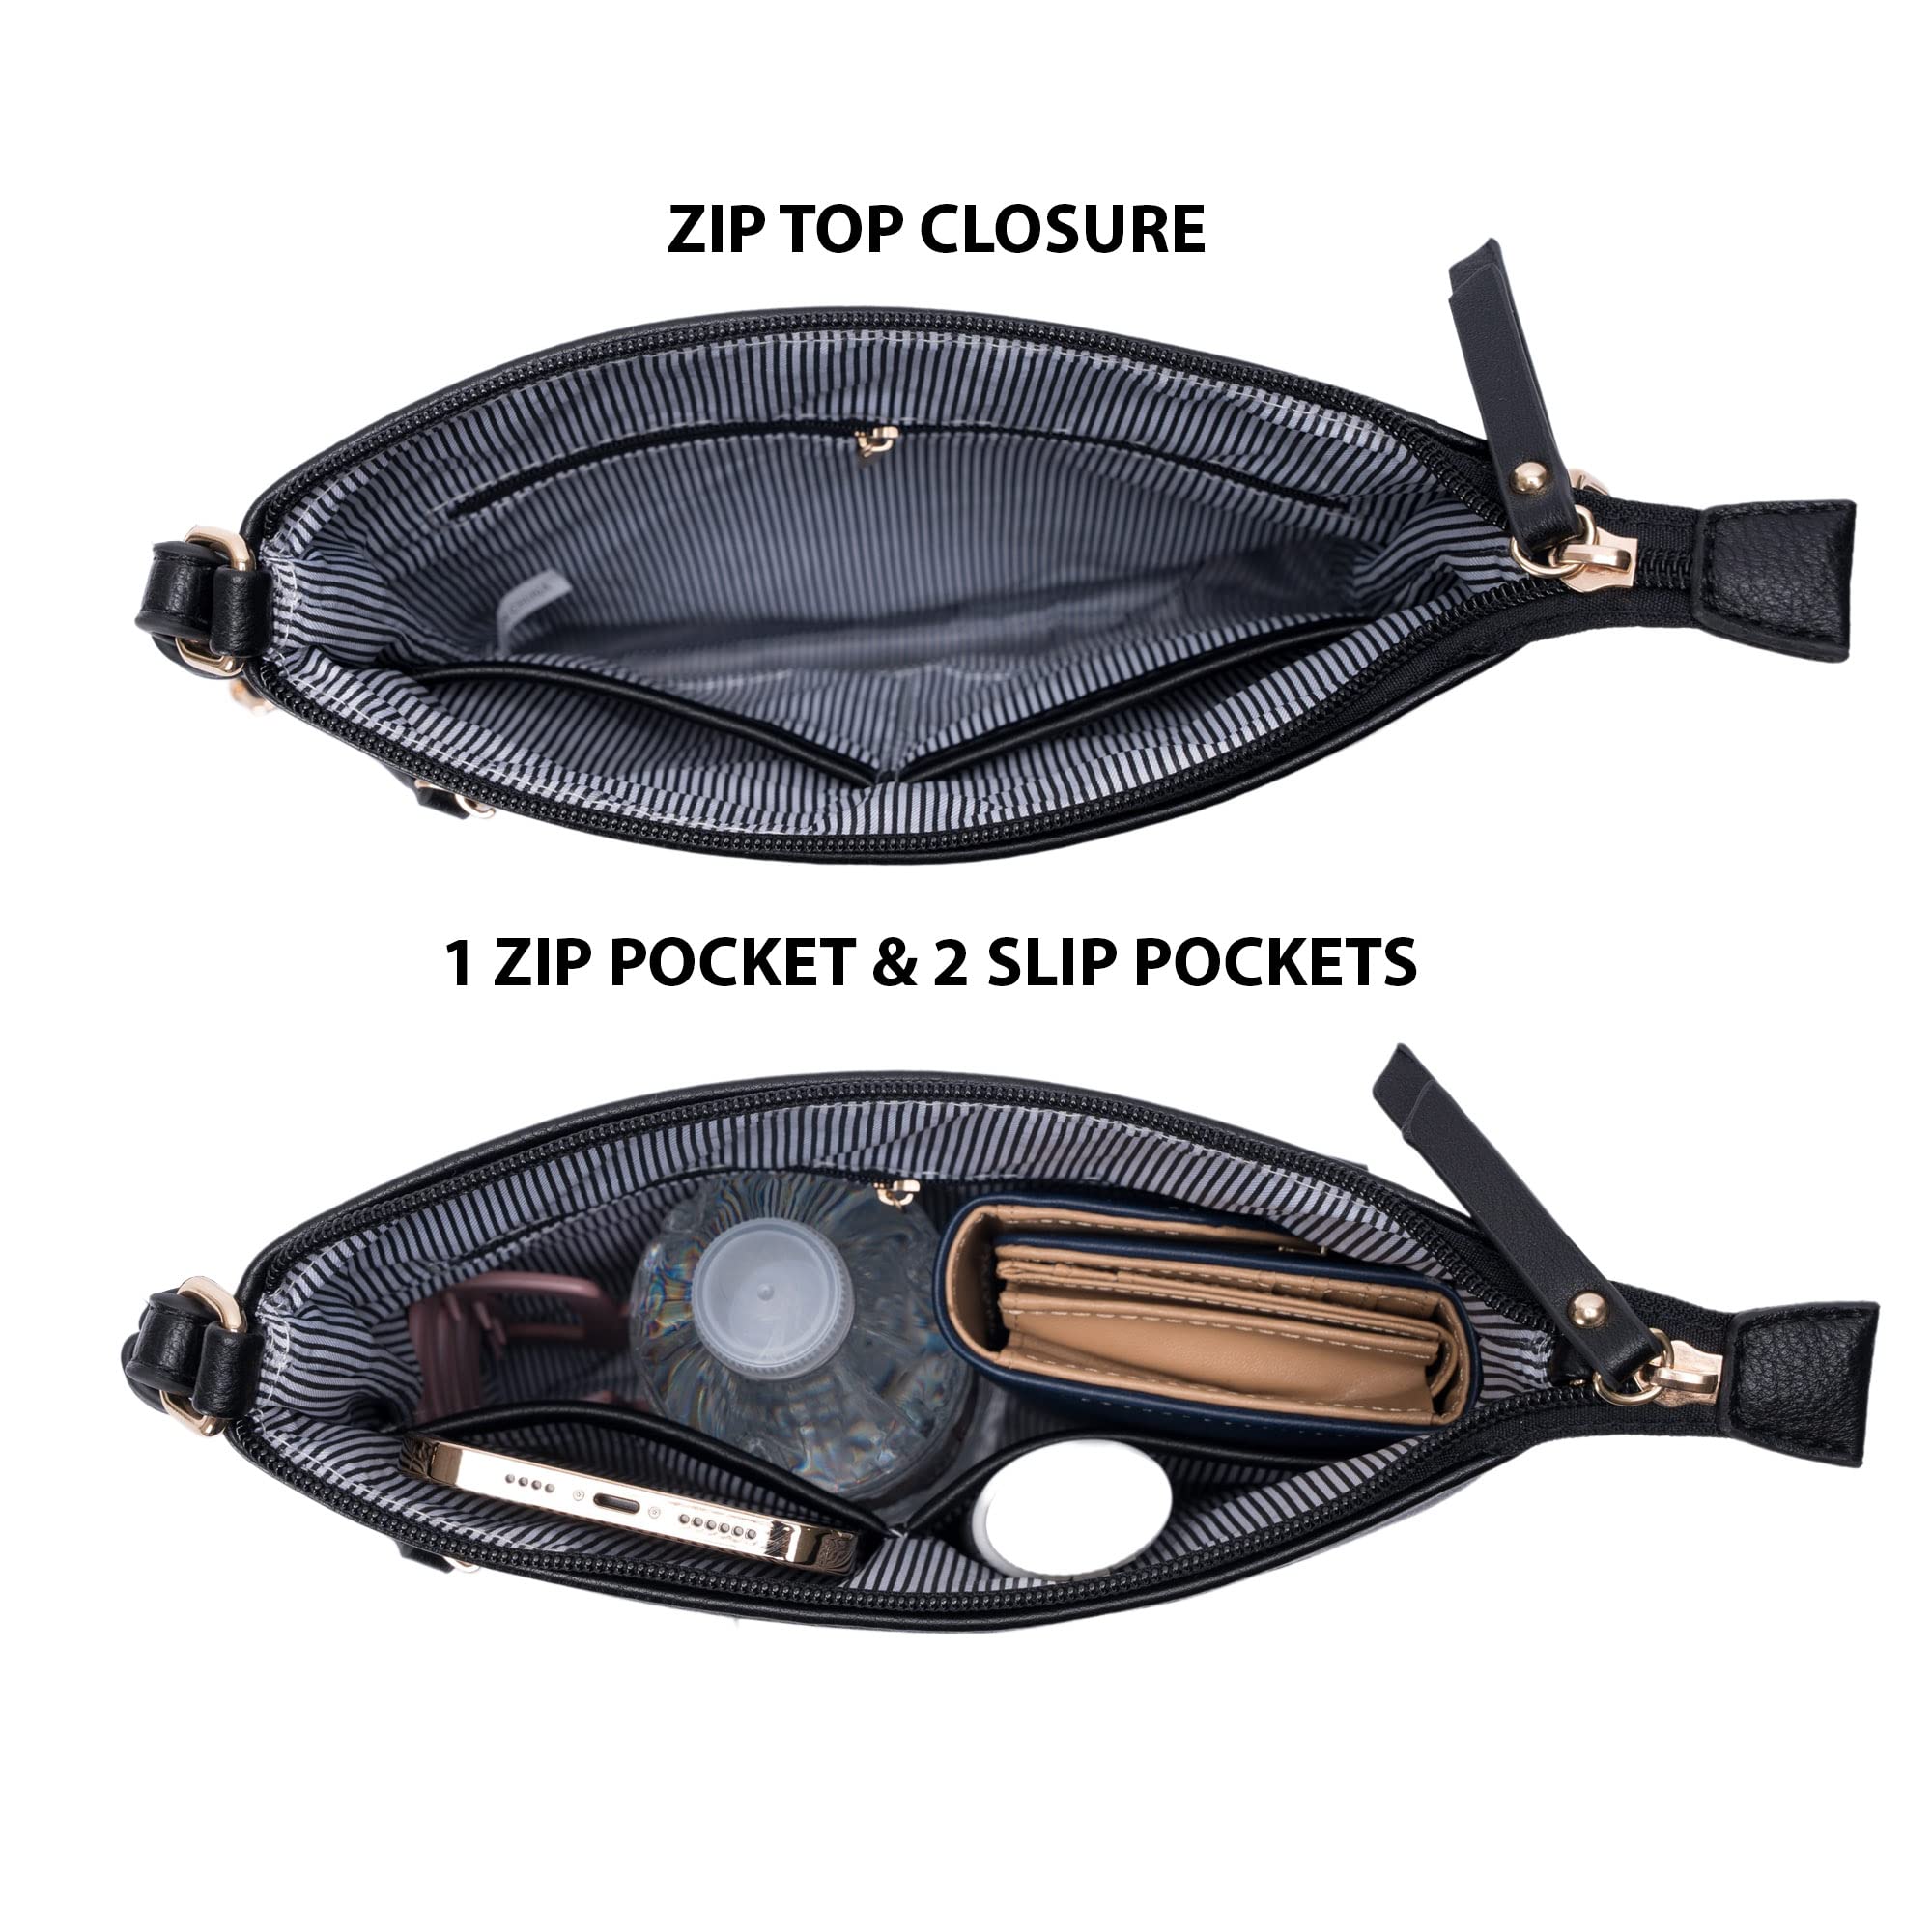 Solene Crossbody Bag Functional Multi Pocket Messenger Purse Top Zip Closure Shoulder Handbag With Adjustable Strap